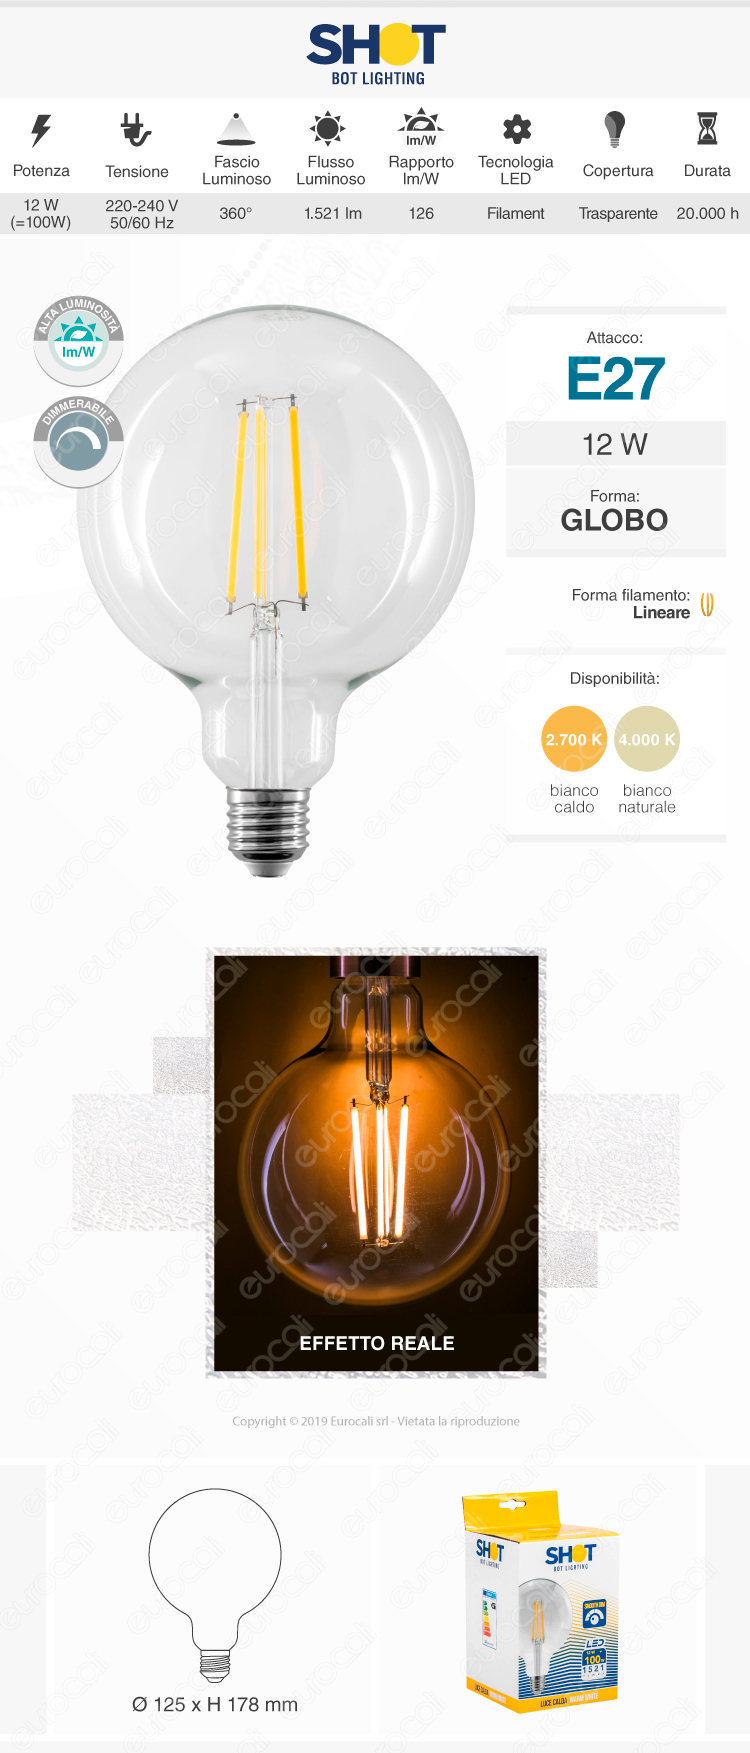 bot lighting shot lampadina led e27 11w g125 globo filament transparent glass dim